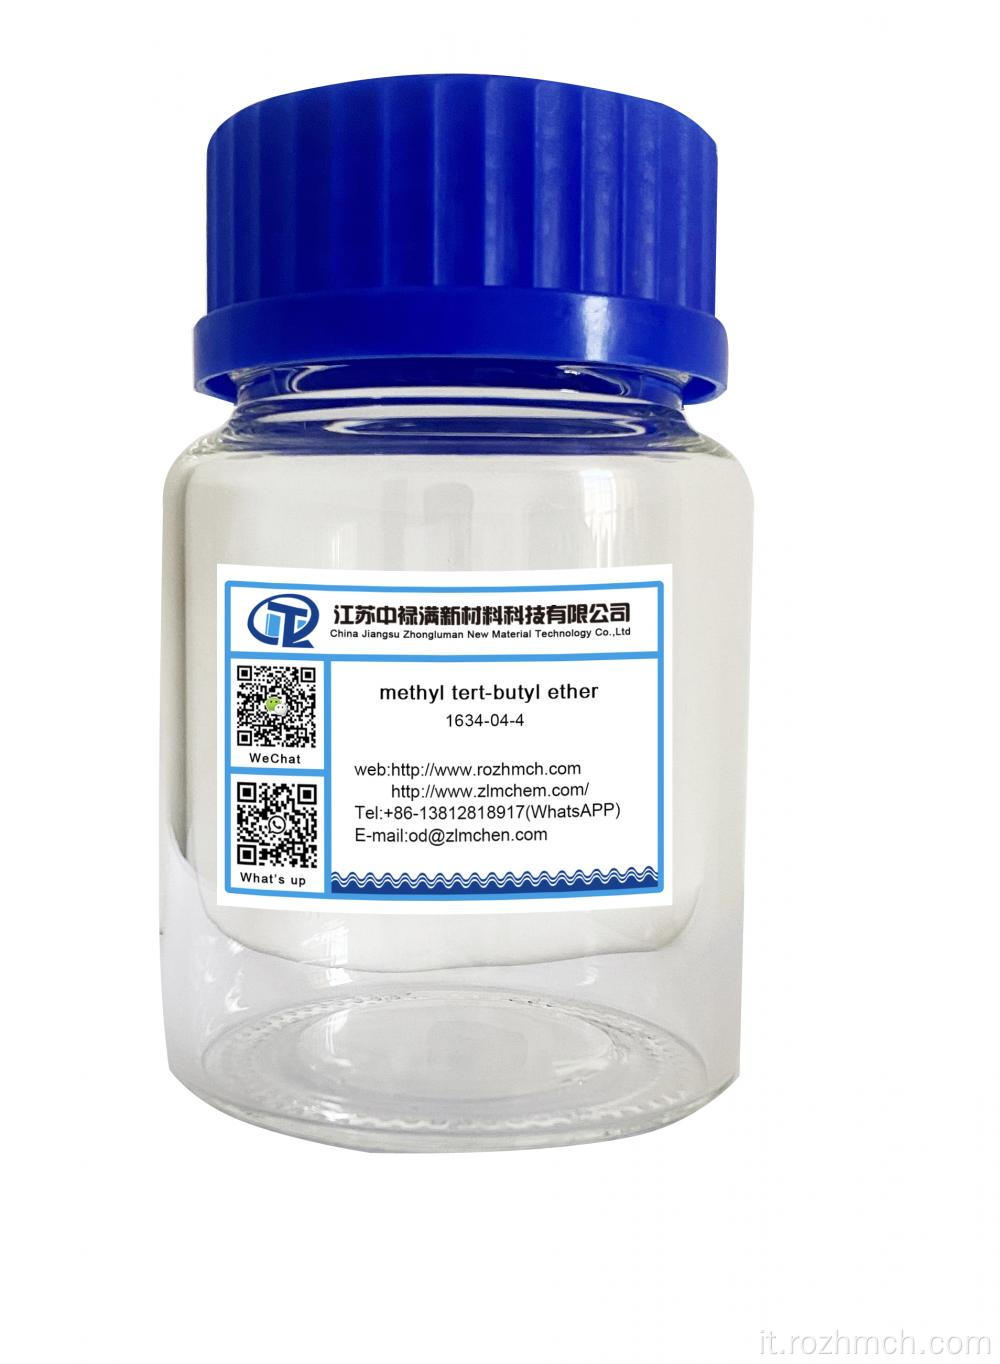 metil tert-butil etere MTBE CAS n. 1634-04-4